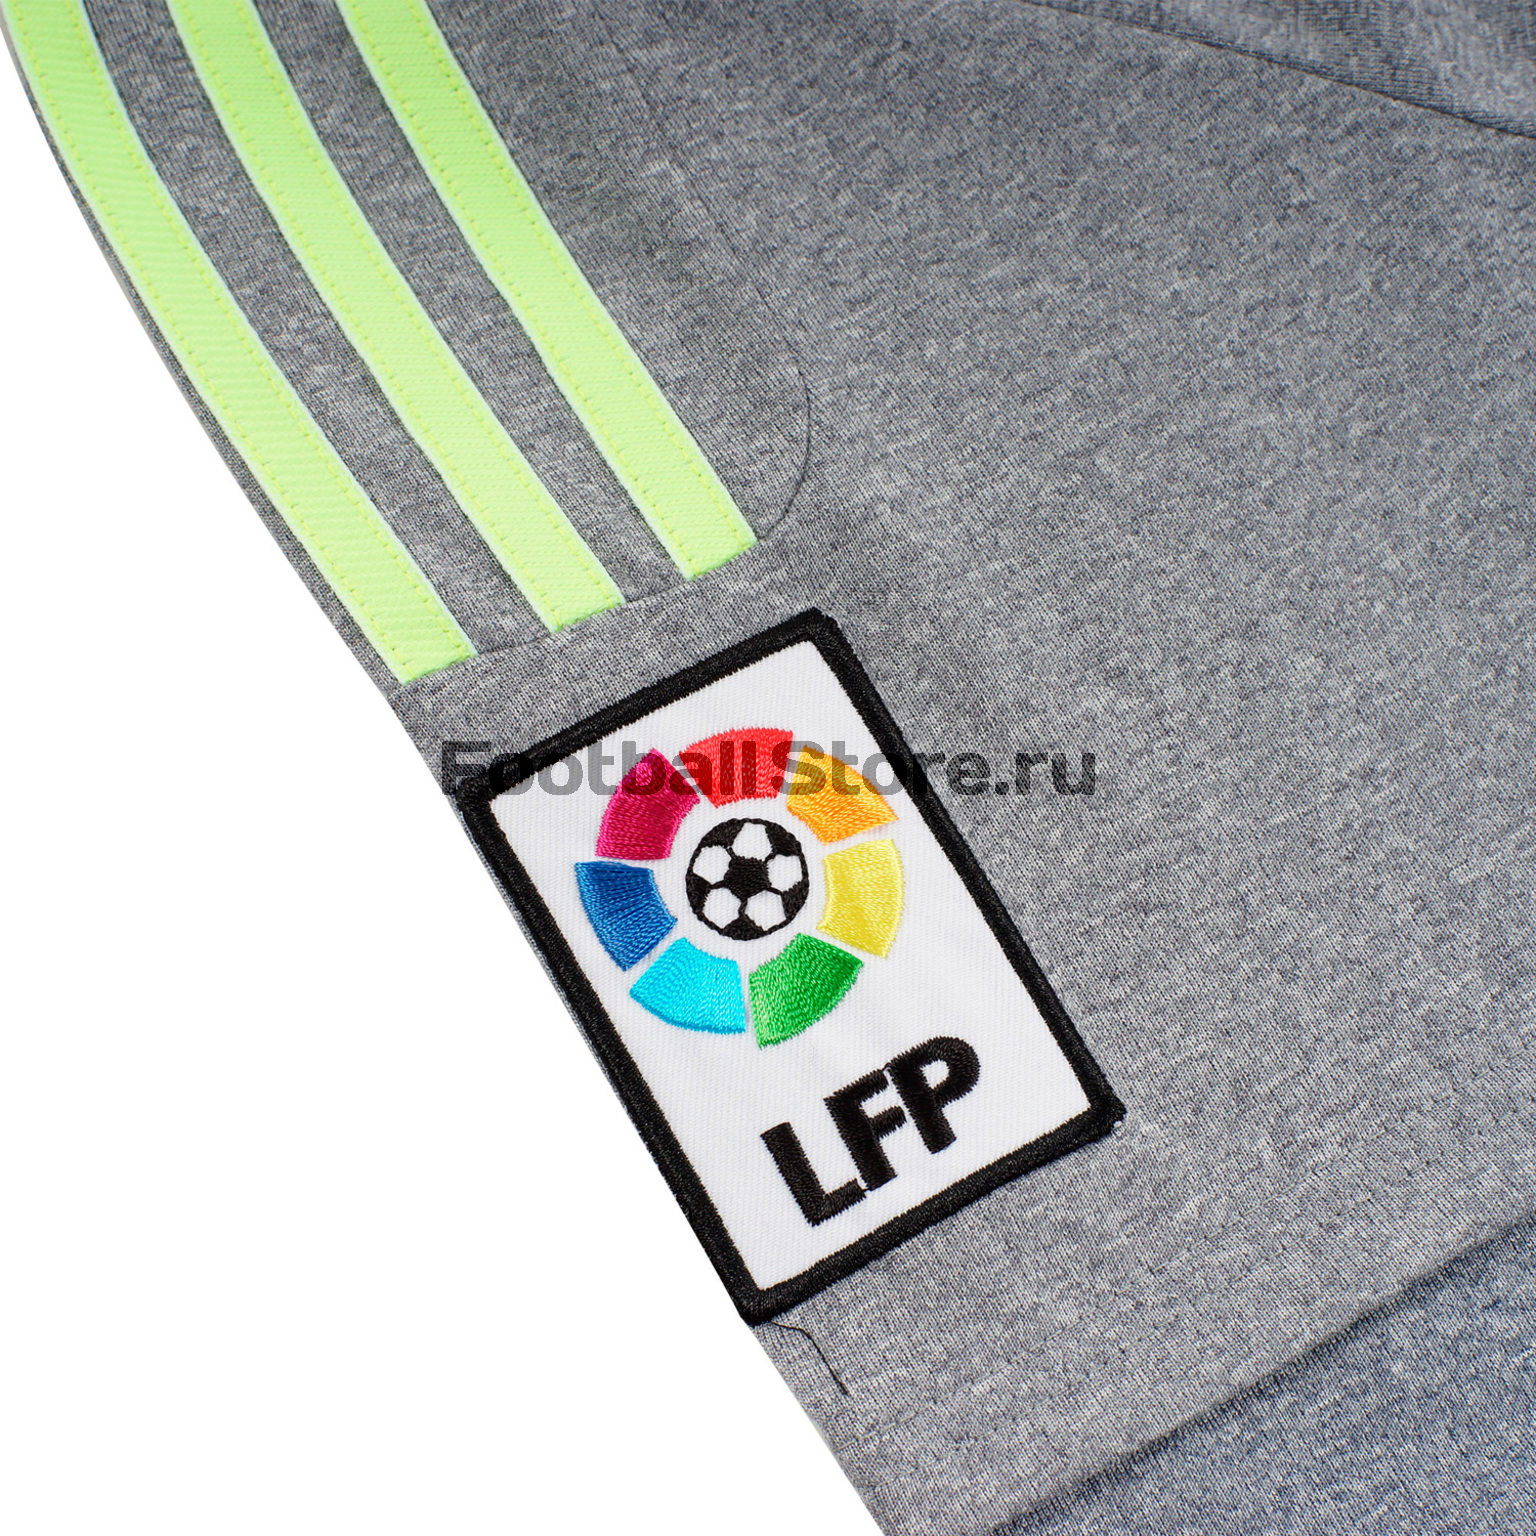 Футболка игровая Adidas Madrid Away JSY – купить в интернет магазине footballstore, цена, фото